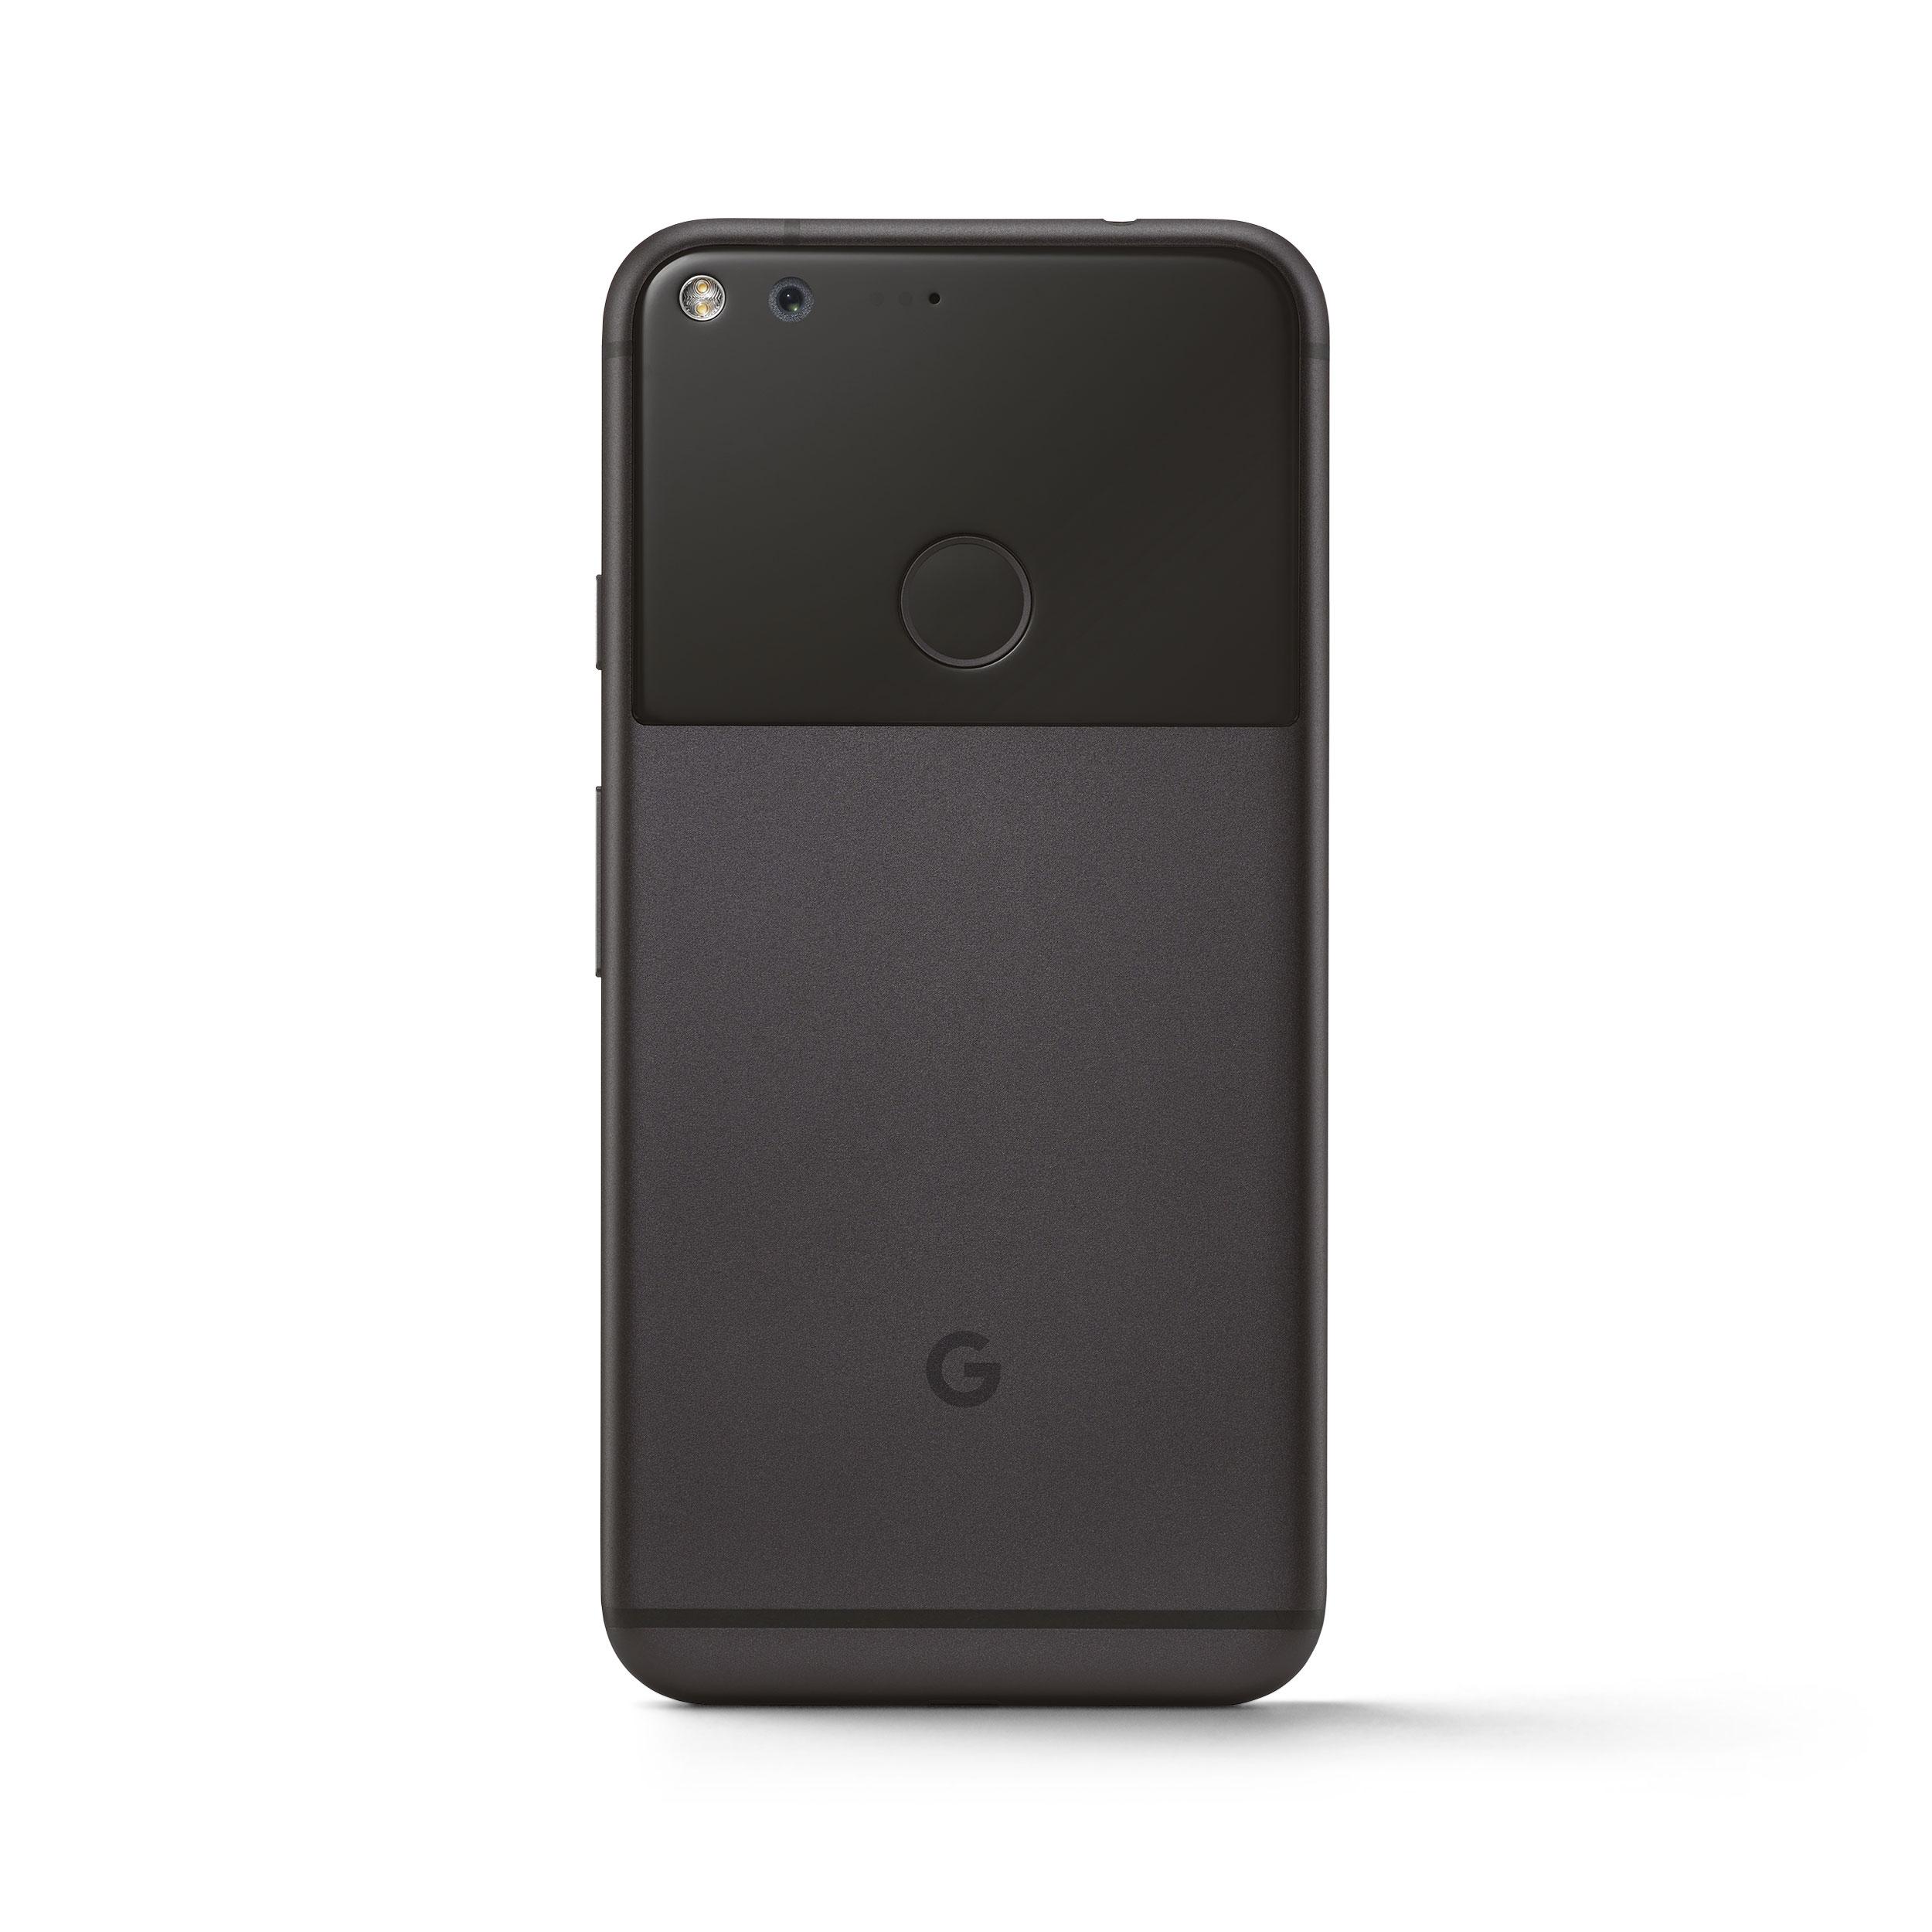 Google Pixel en color negro